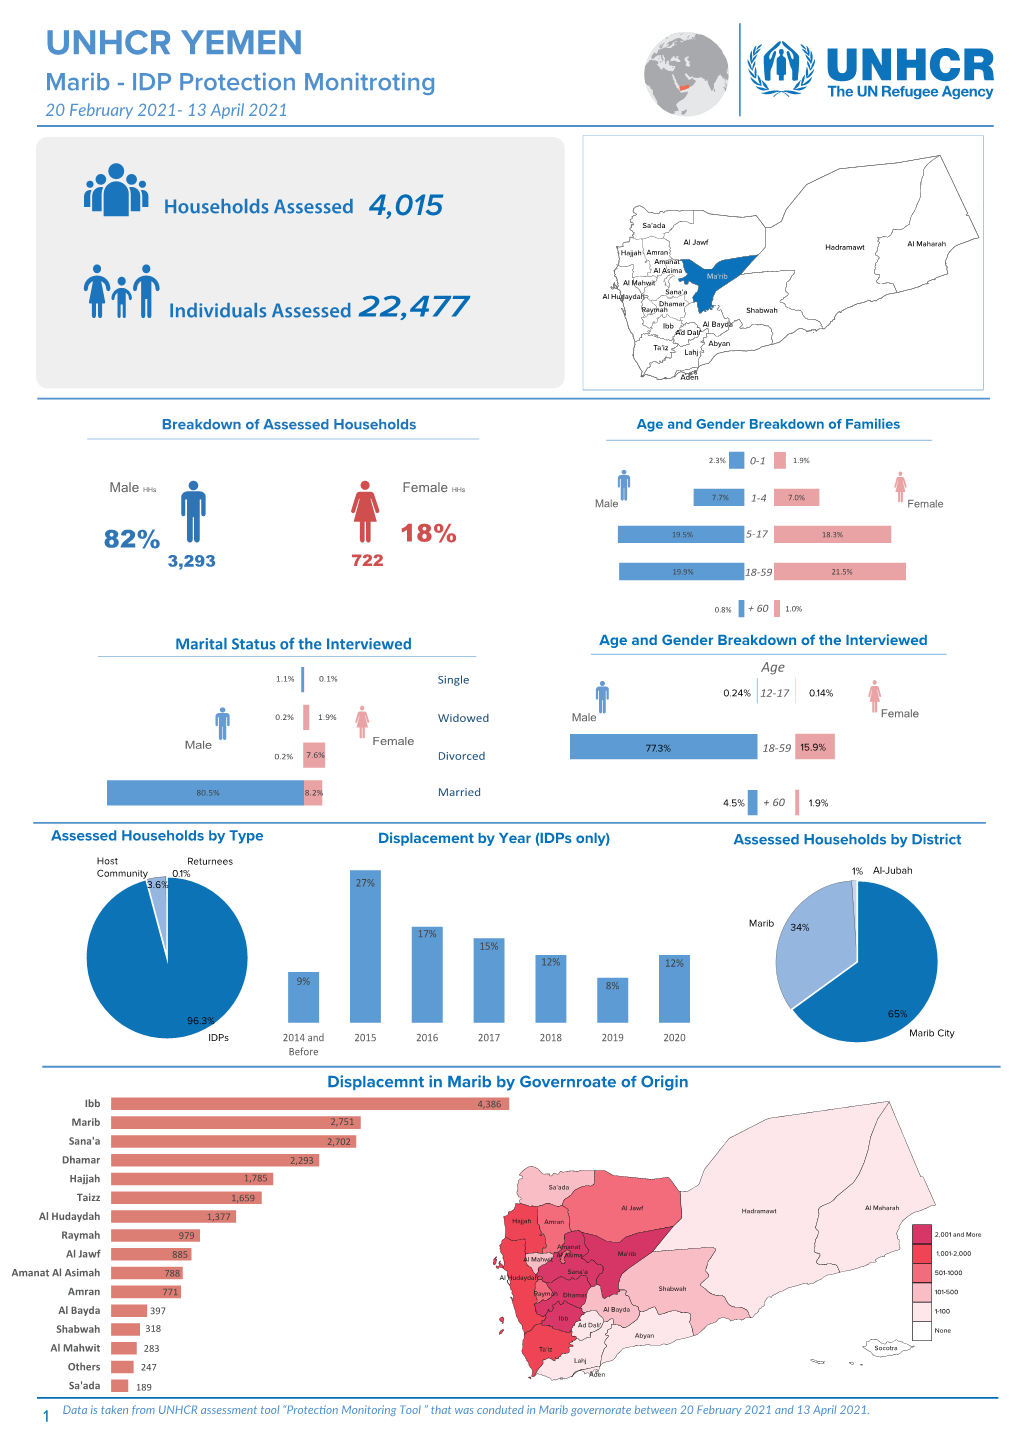 UNHCR Marib IDP Protection Monitoring Update